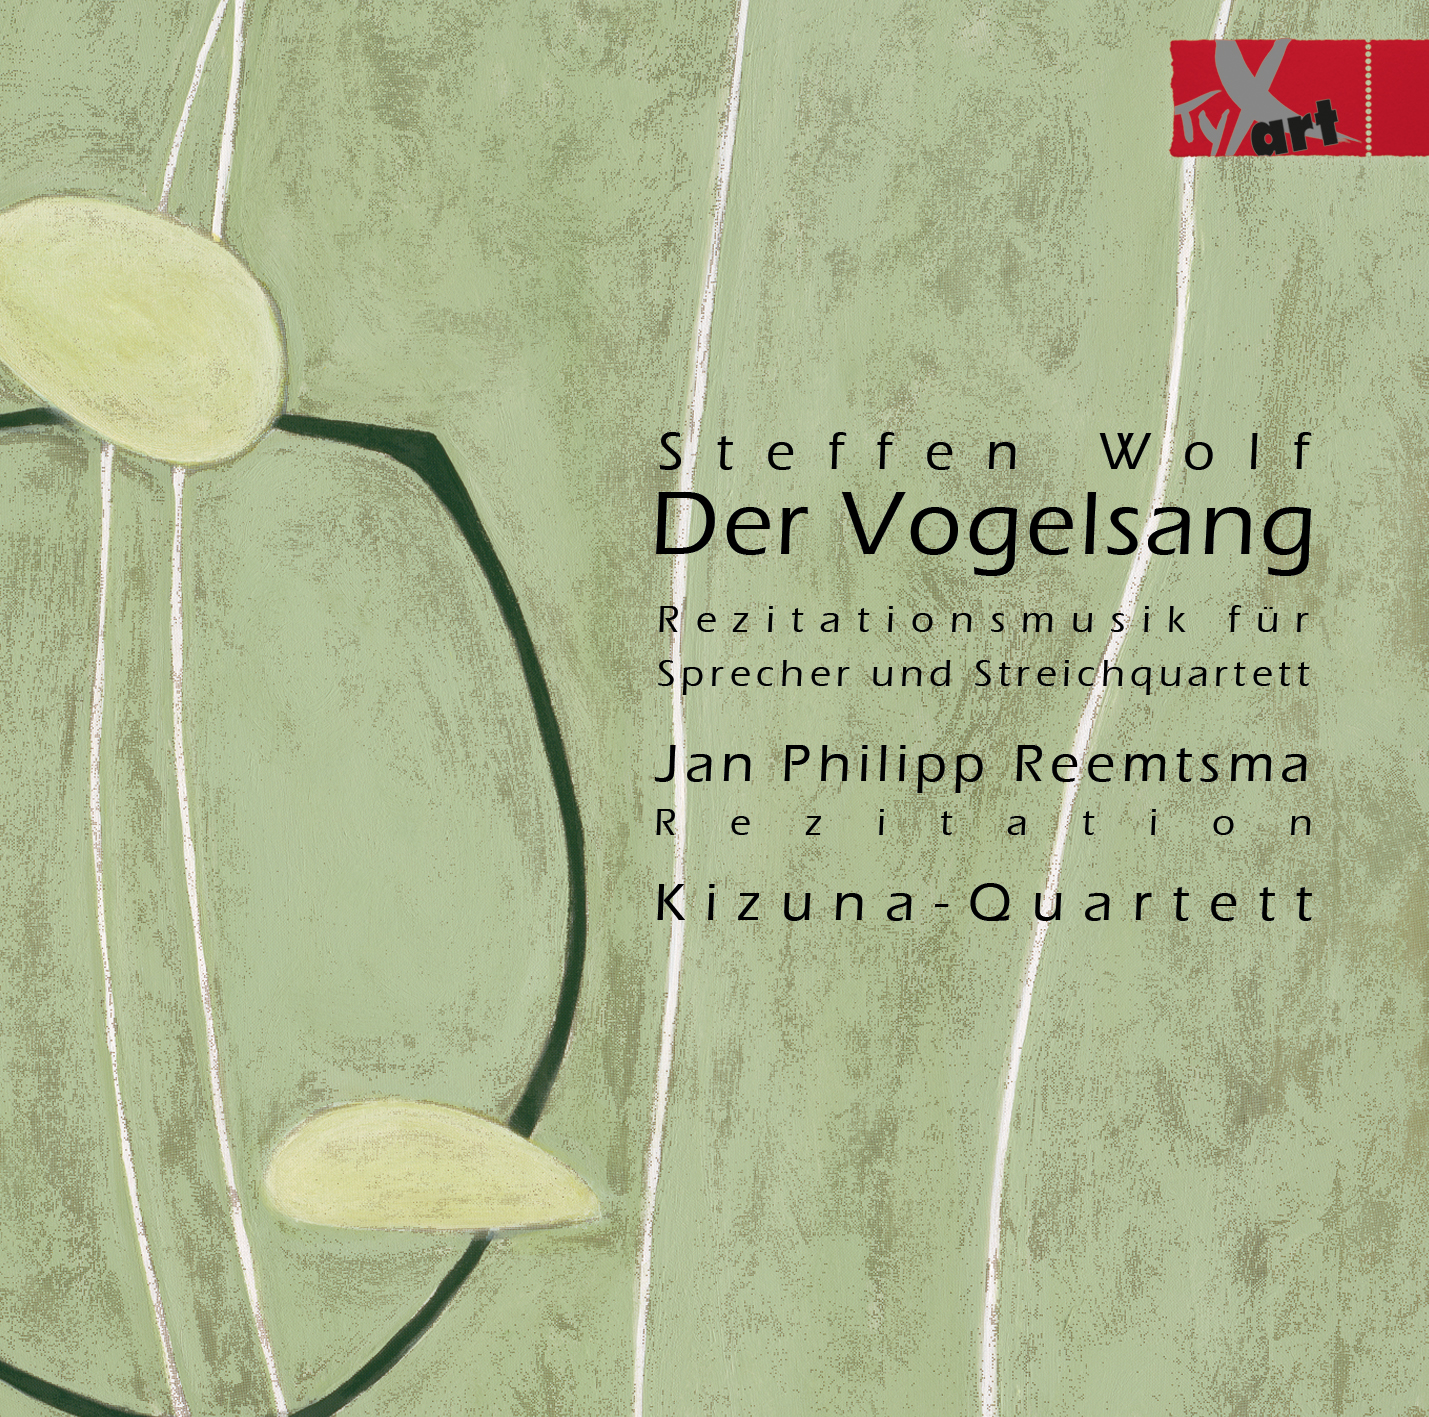 Steffen Wolf - Der Vogelsang - Jan Philipp Reemtsma - Kizuna Quartet